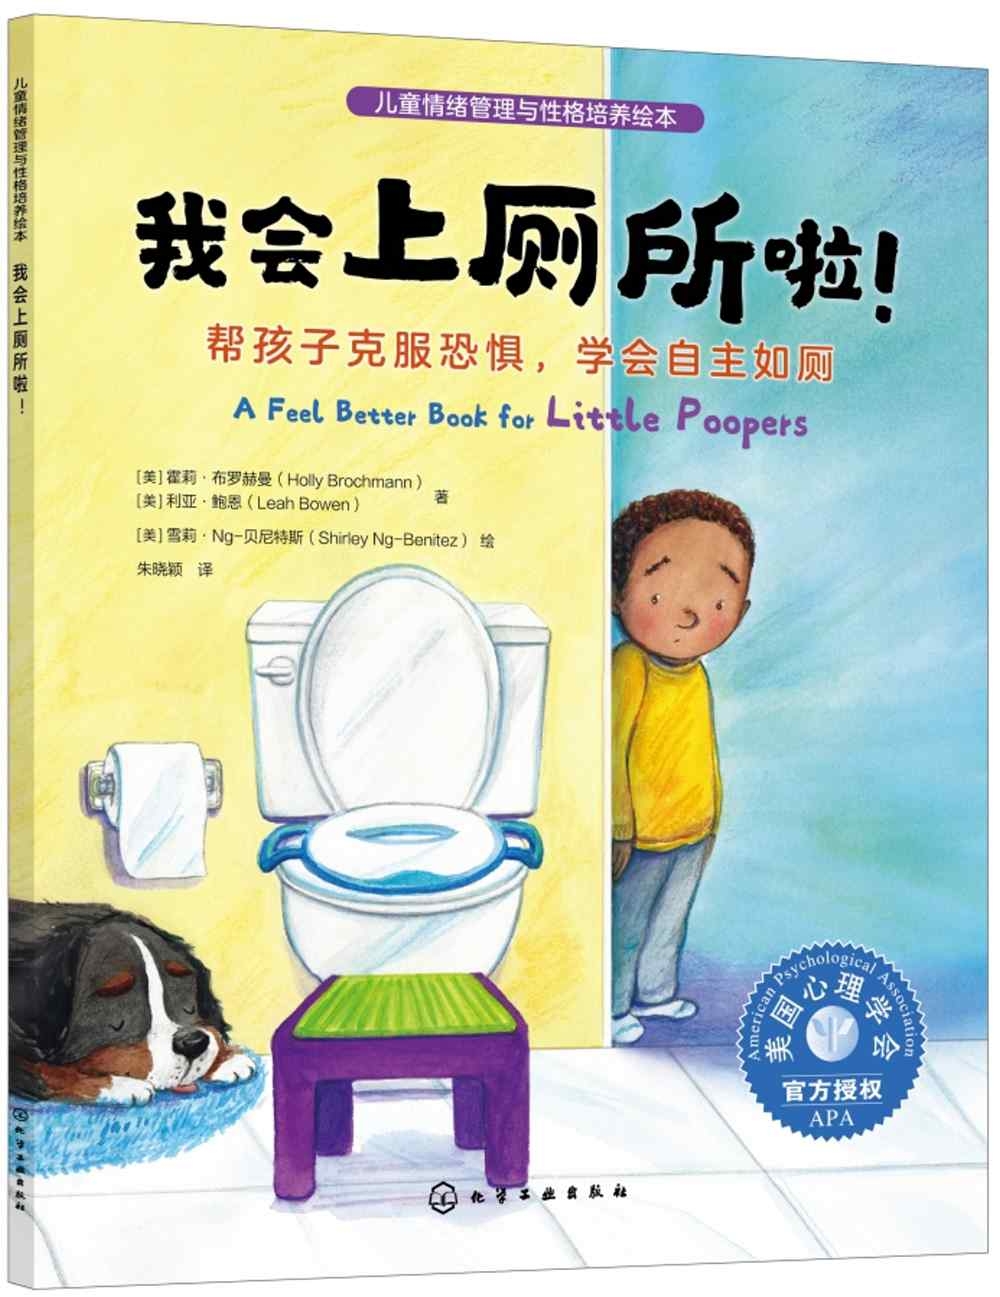 我會上廁所啦!：幫孩子克服恐懼，學會自主如廁